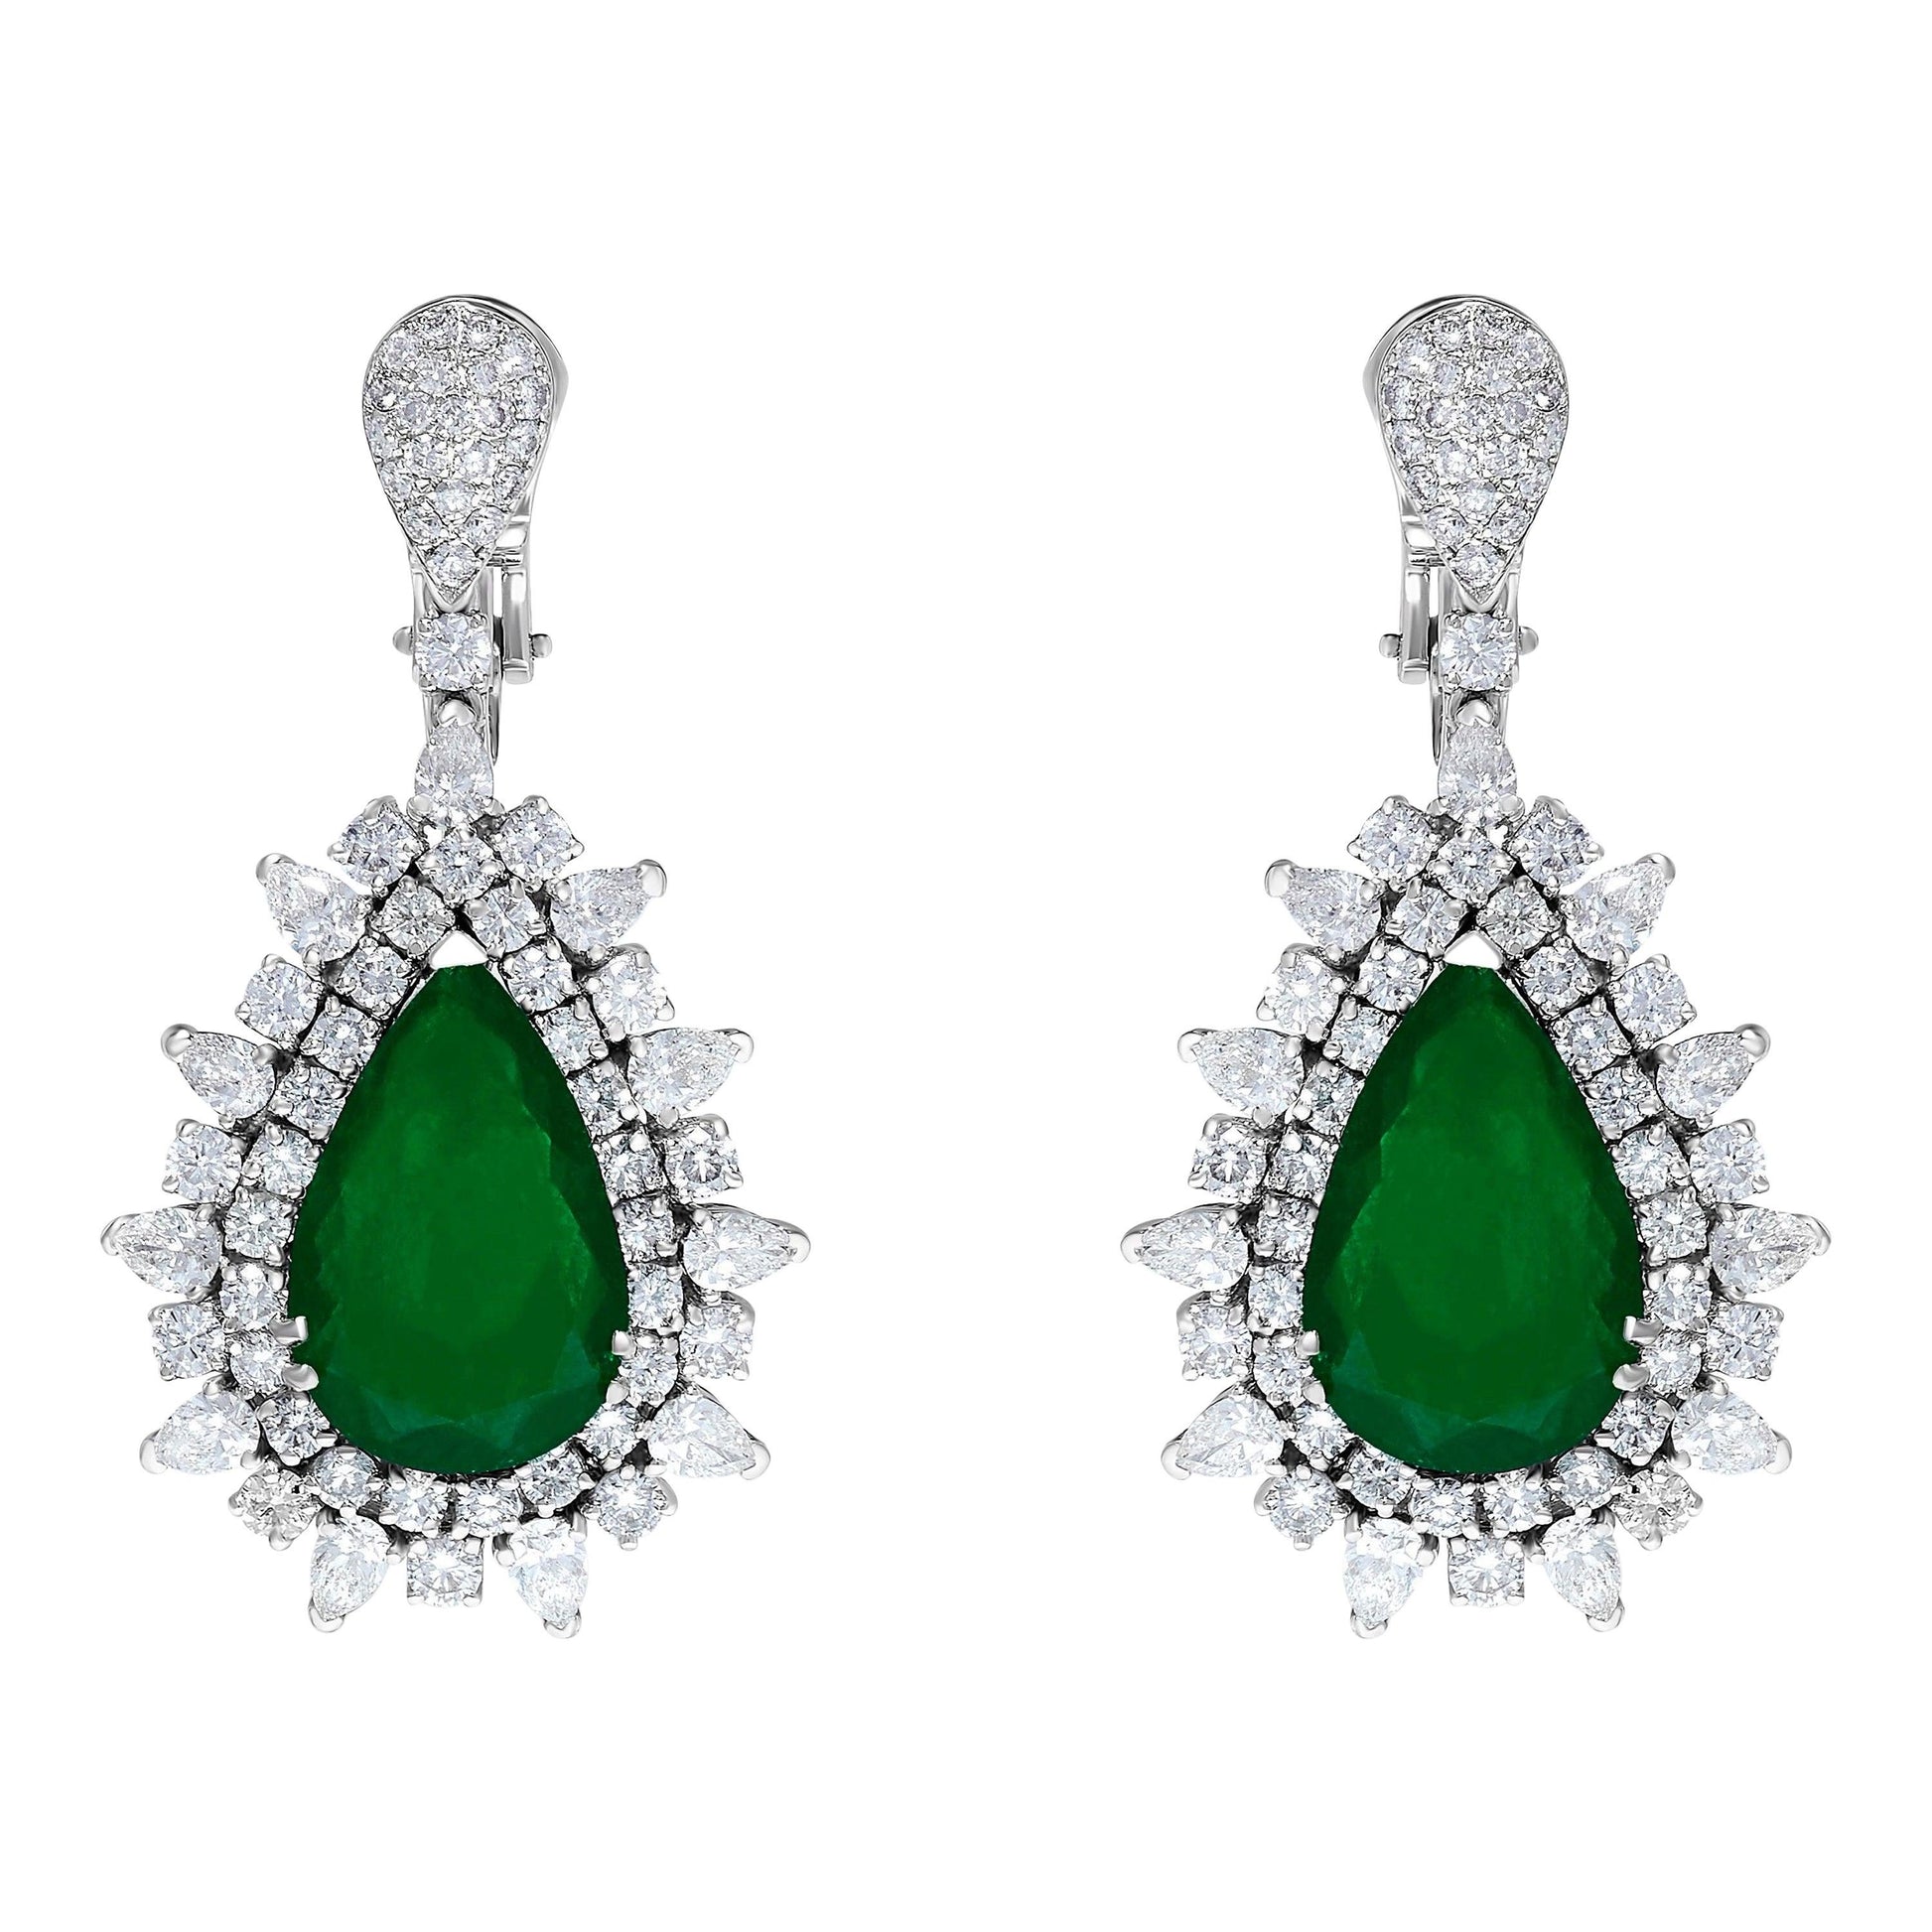 Emilio Jewelry Certified 17.00 Carat Colombian Muzo Vivid Green Emerald Earrings